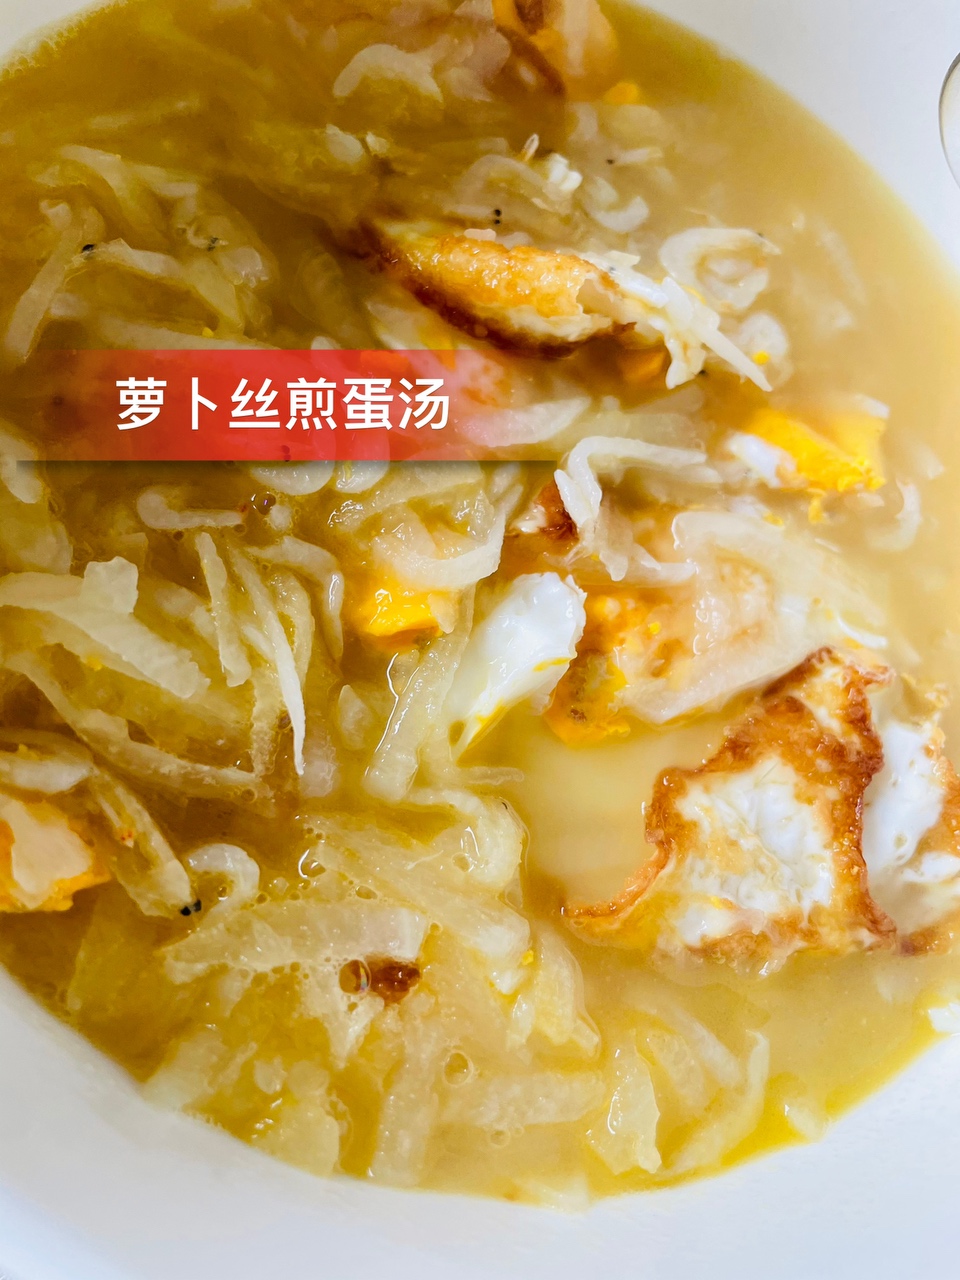 萝卜丝煎蛋虾皮汤～颜值一般，味道巨鲜